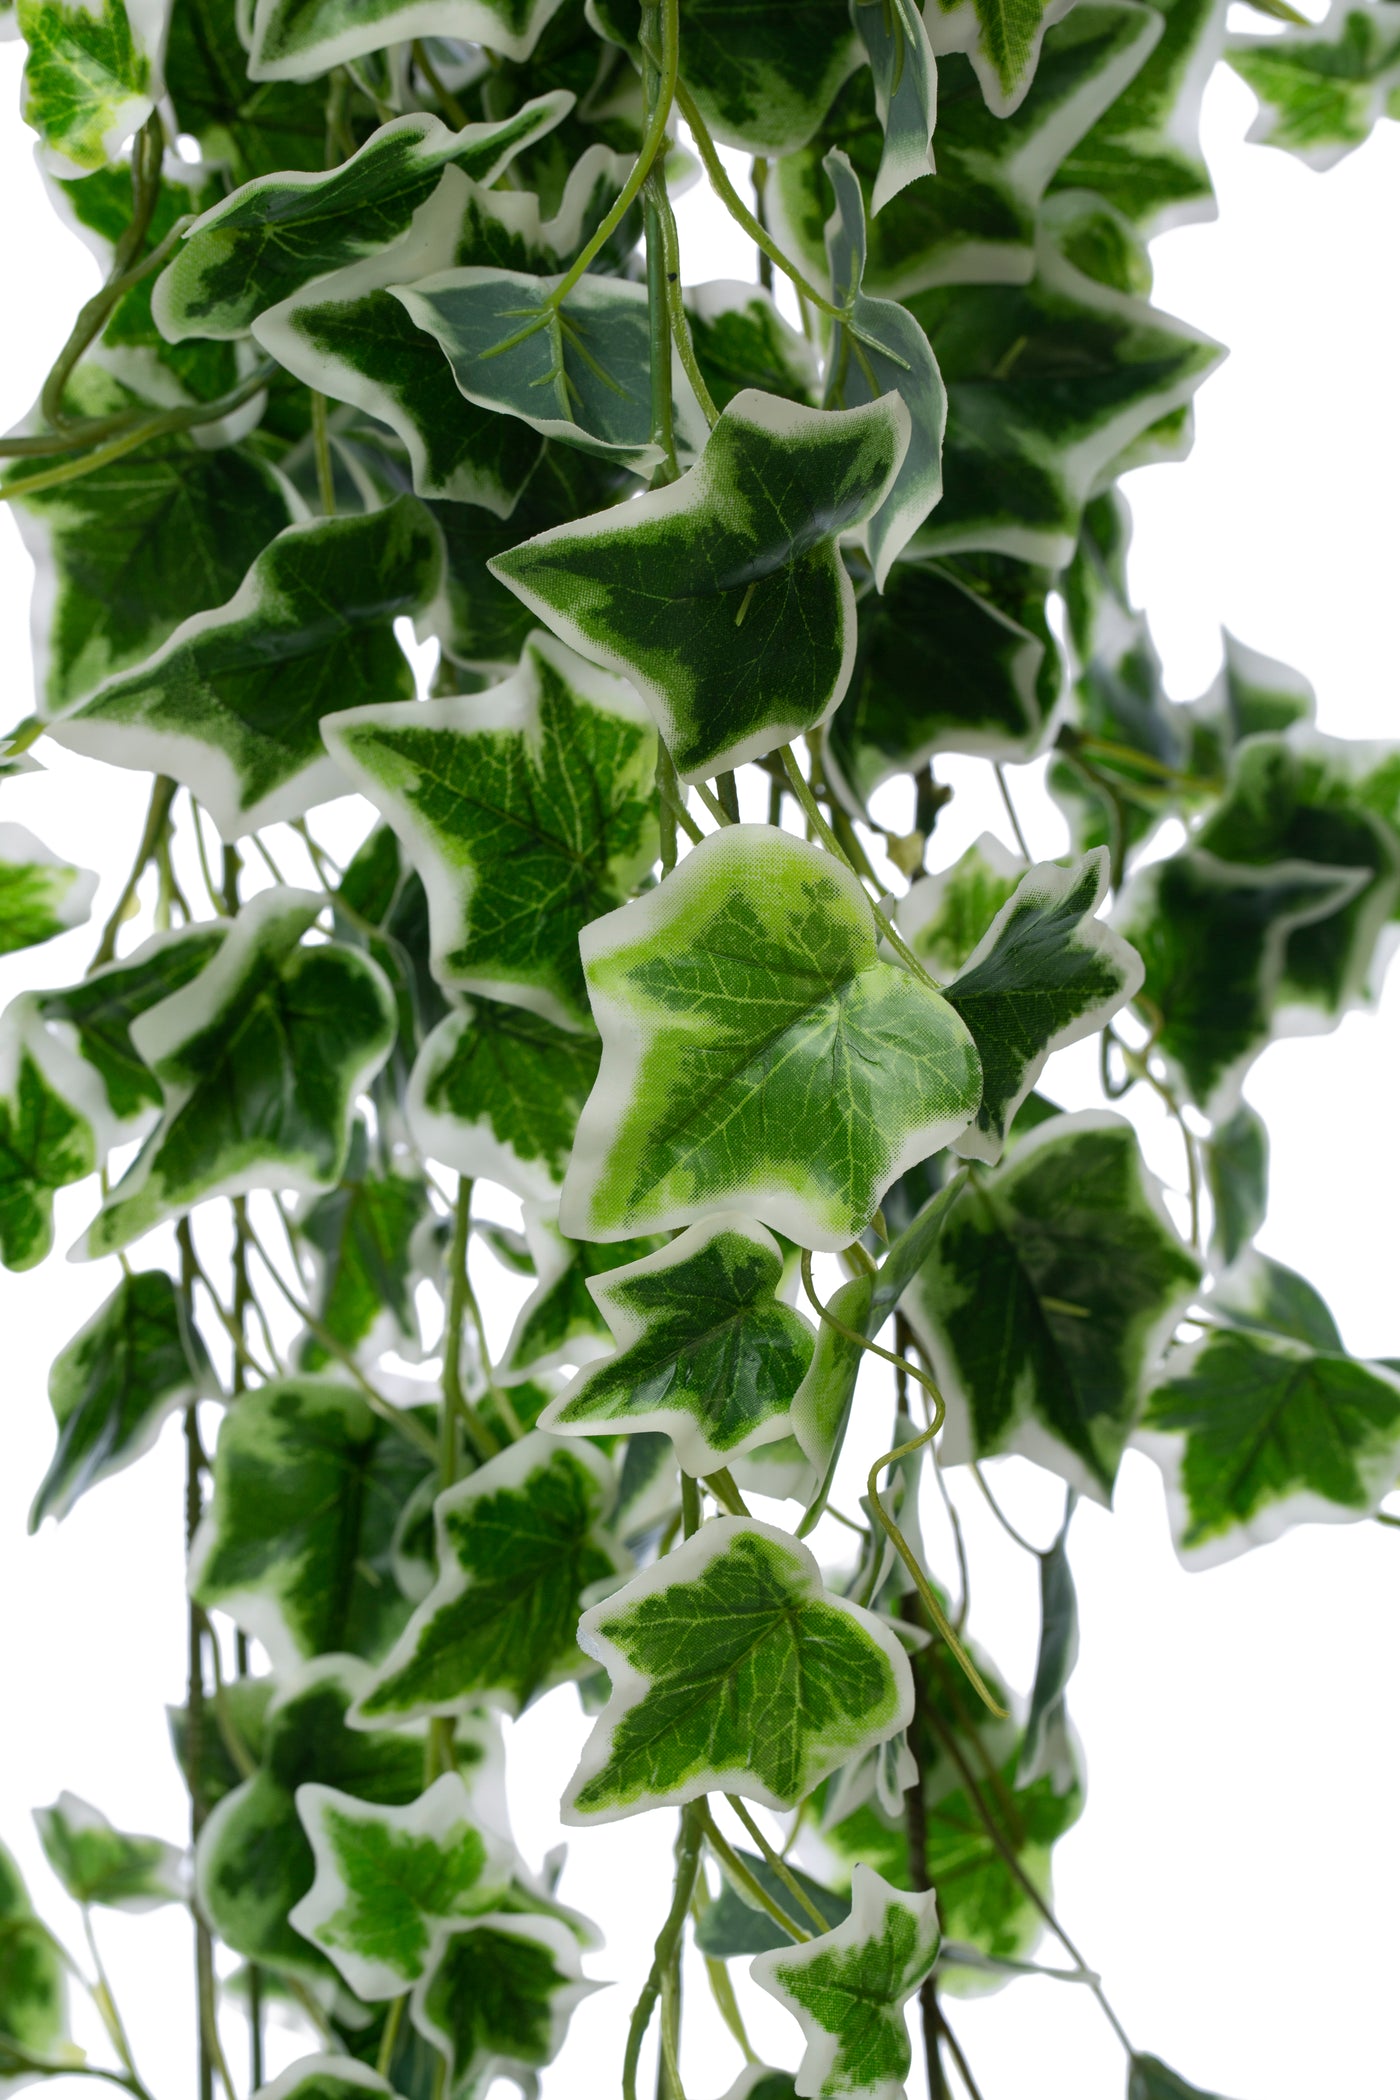 Iedera artificiala H160cm cu frunze verde cu alb pentru exterior cu protectie UV